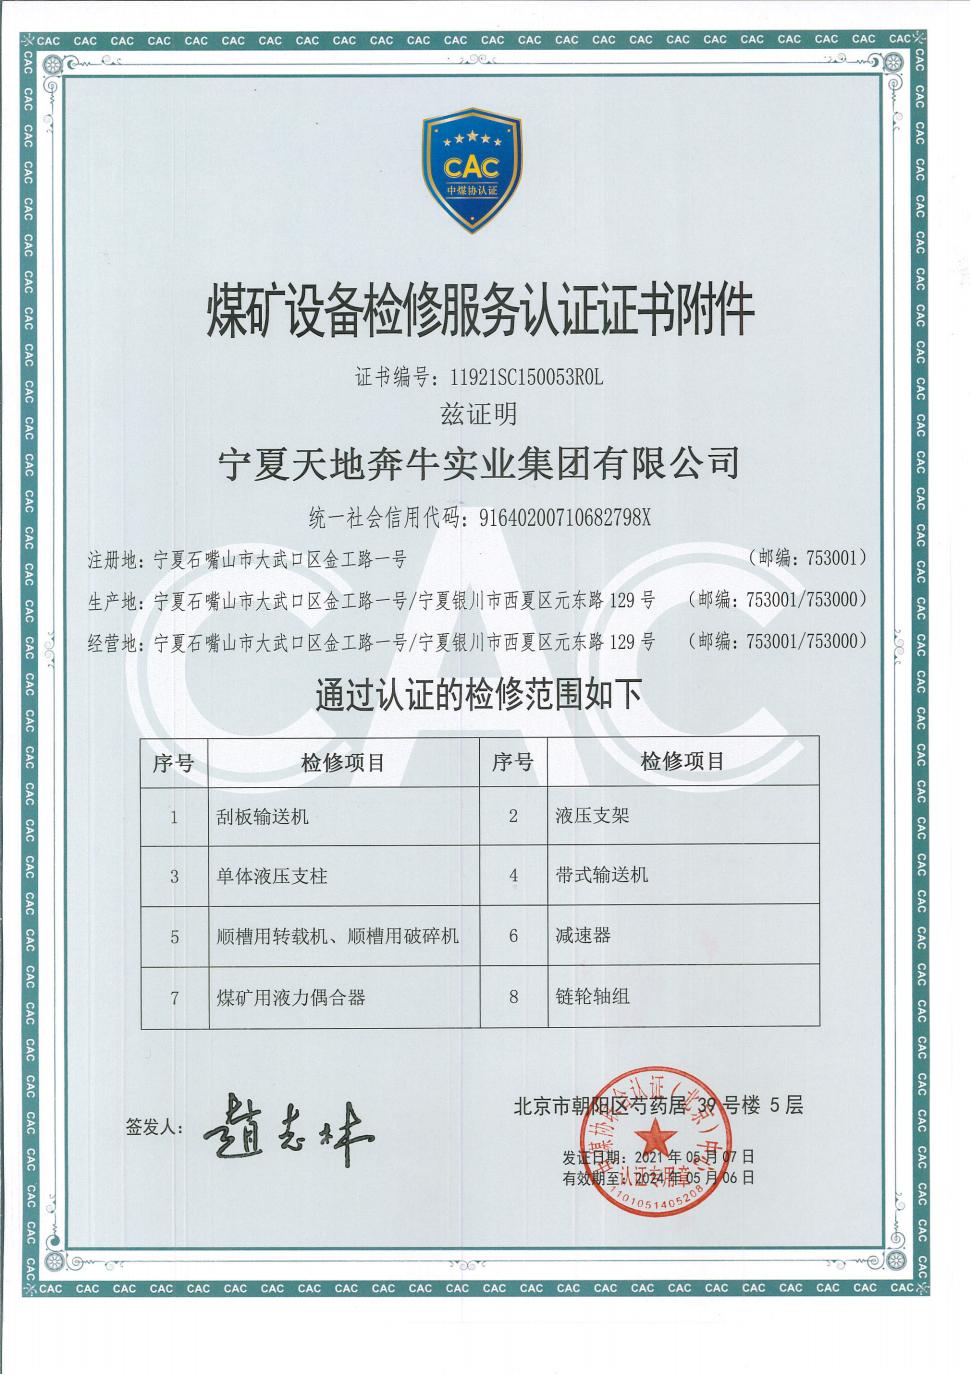 煤矿设备检修服务认证证书_01.jpg